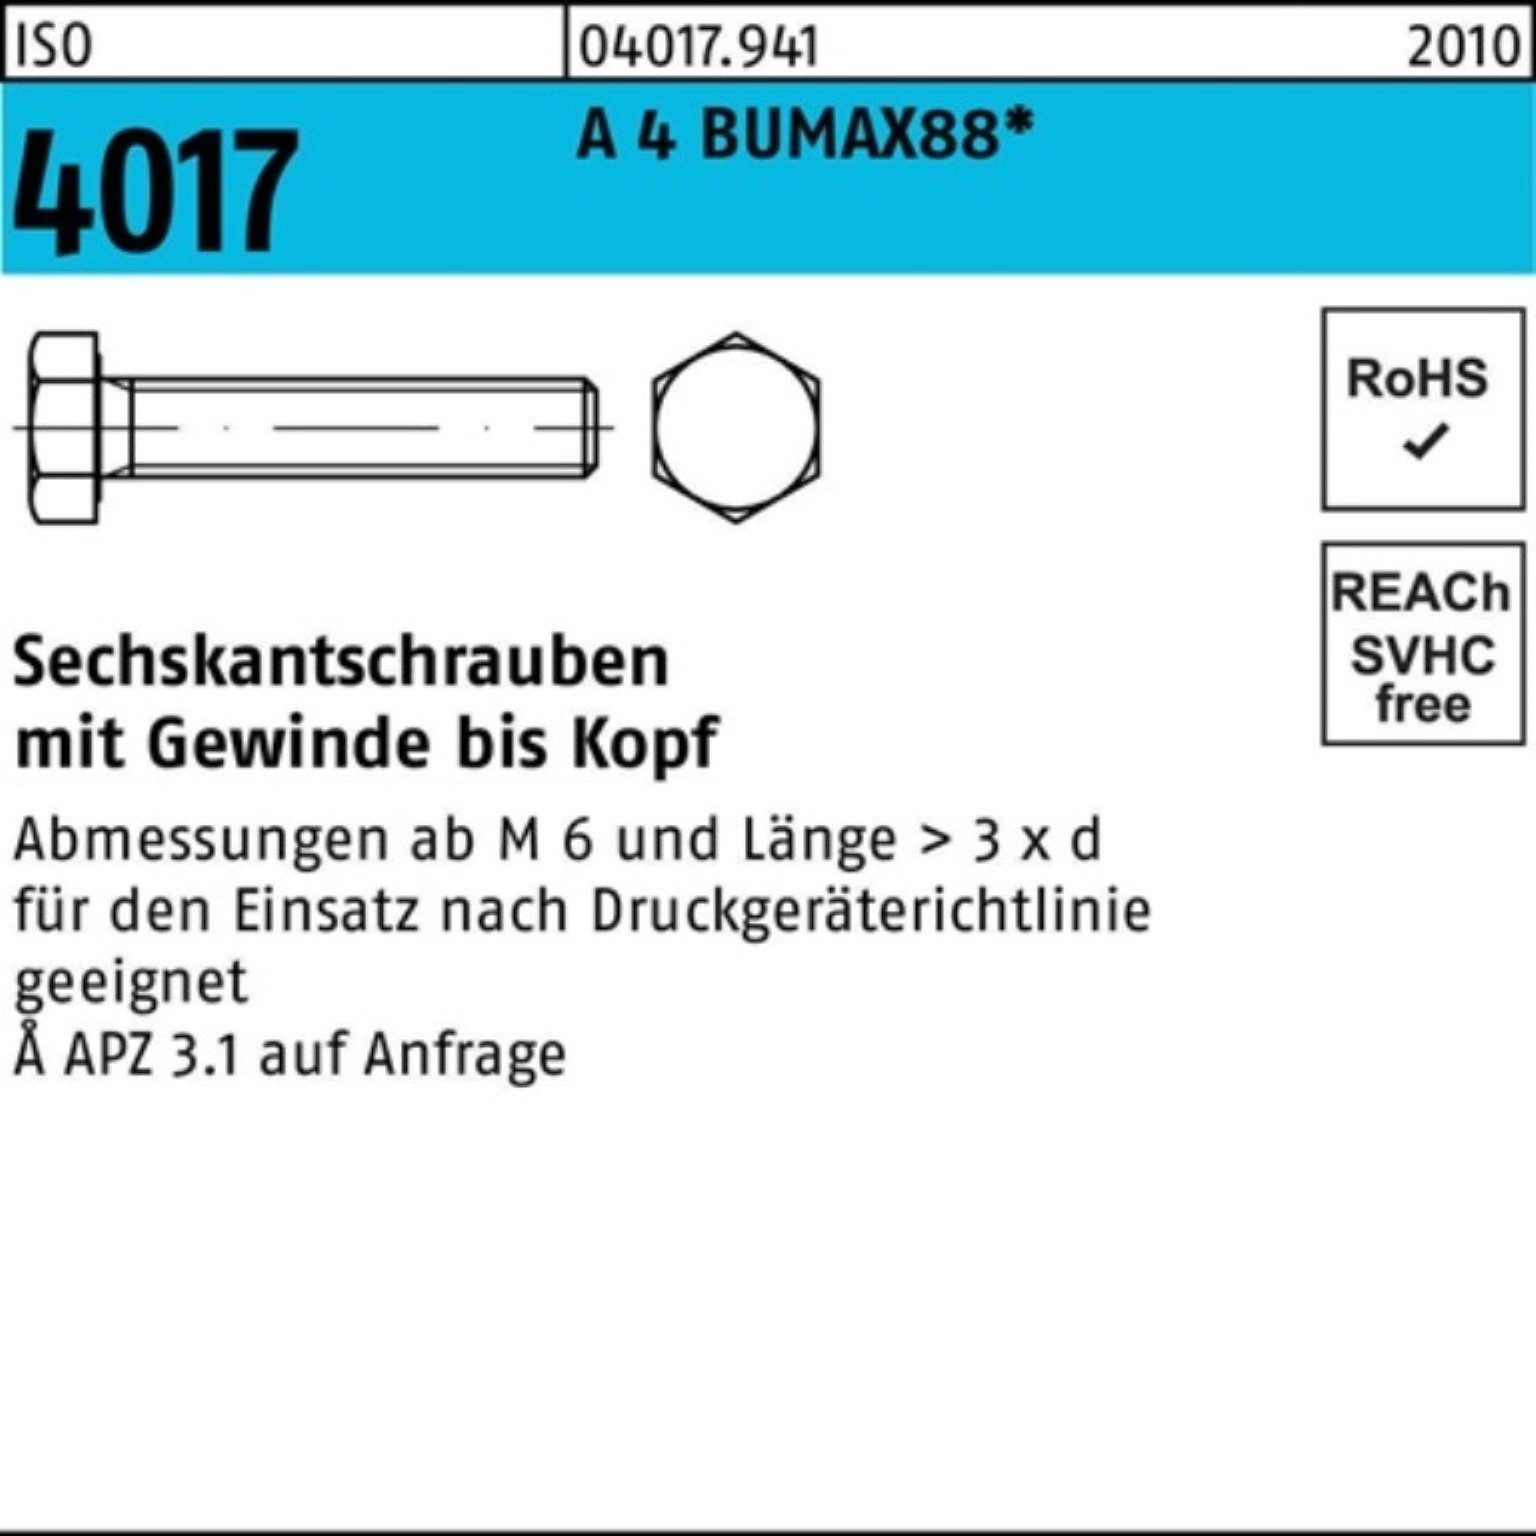 Bufab Sechskantschraube 100er Pack Sechskantschraube ISO 4017 VG M20x 70 A 4 BUMAX88 10 Stück